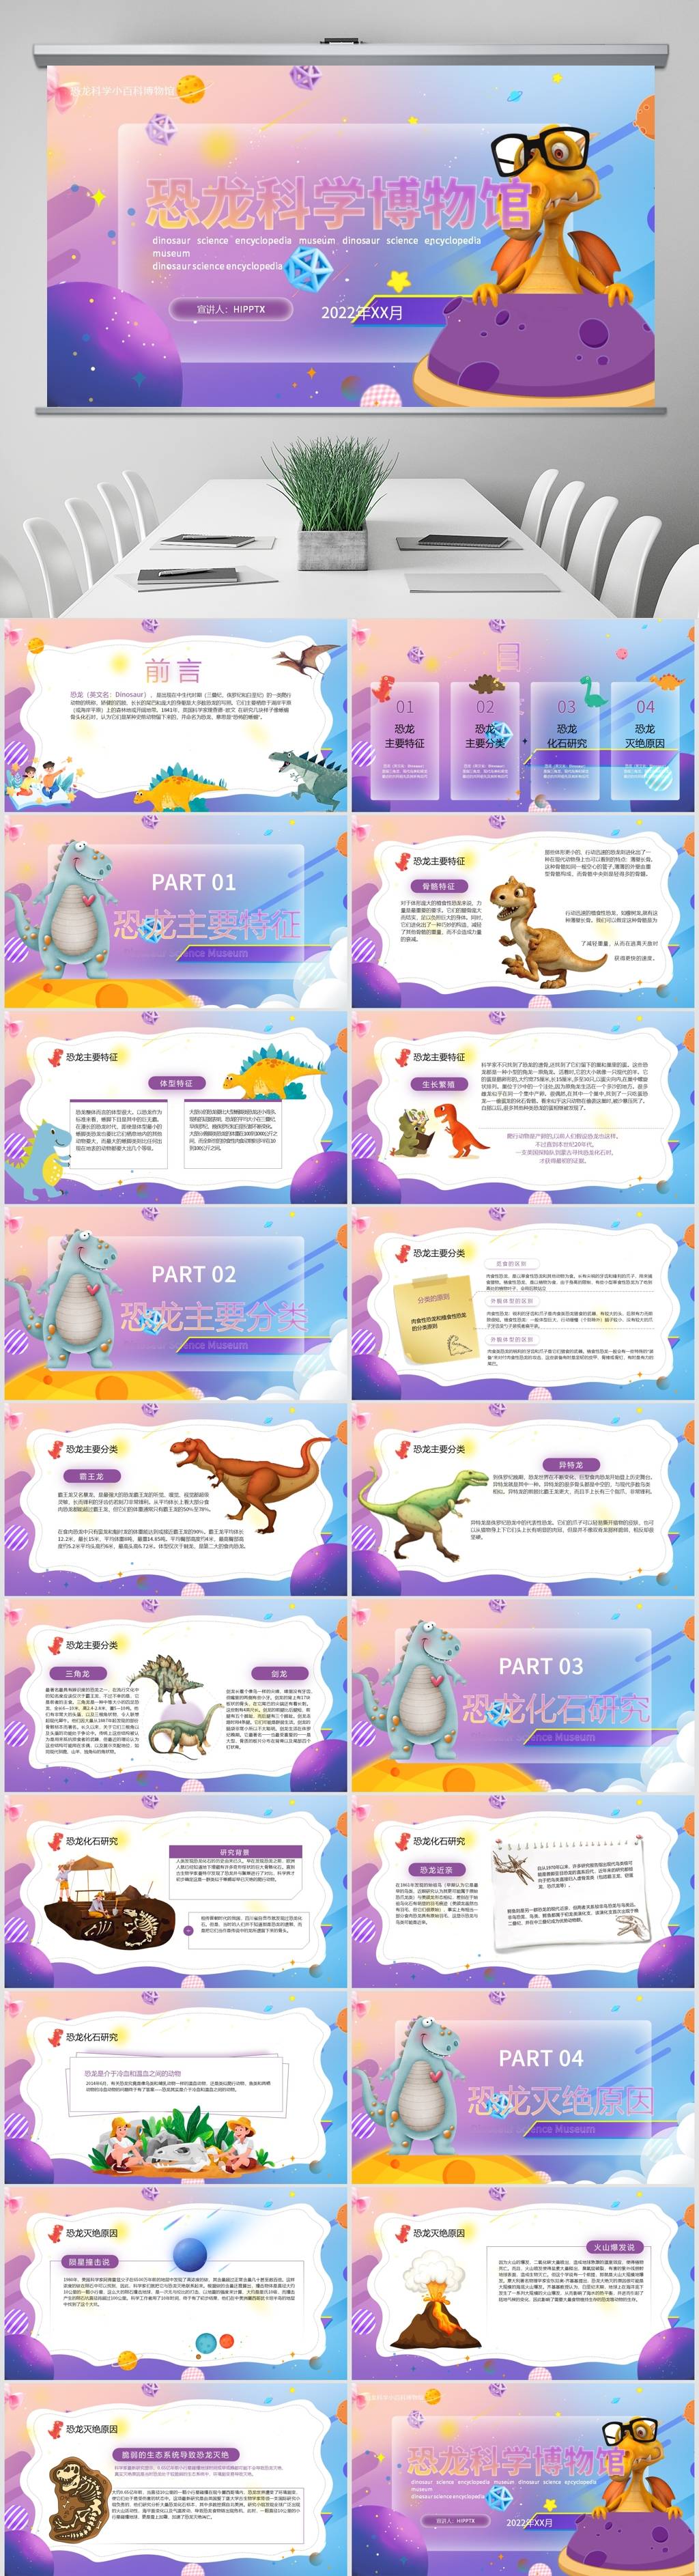 中小学教育恐龙知识科普主题班会ppt讲座课件共有21页,带内容的ppt